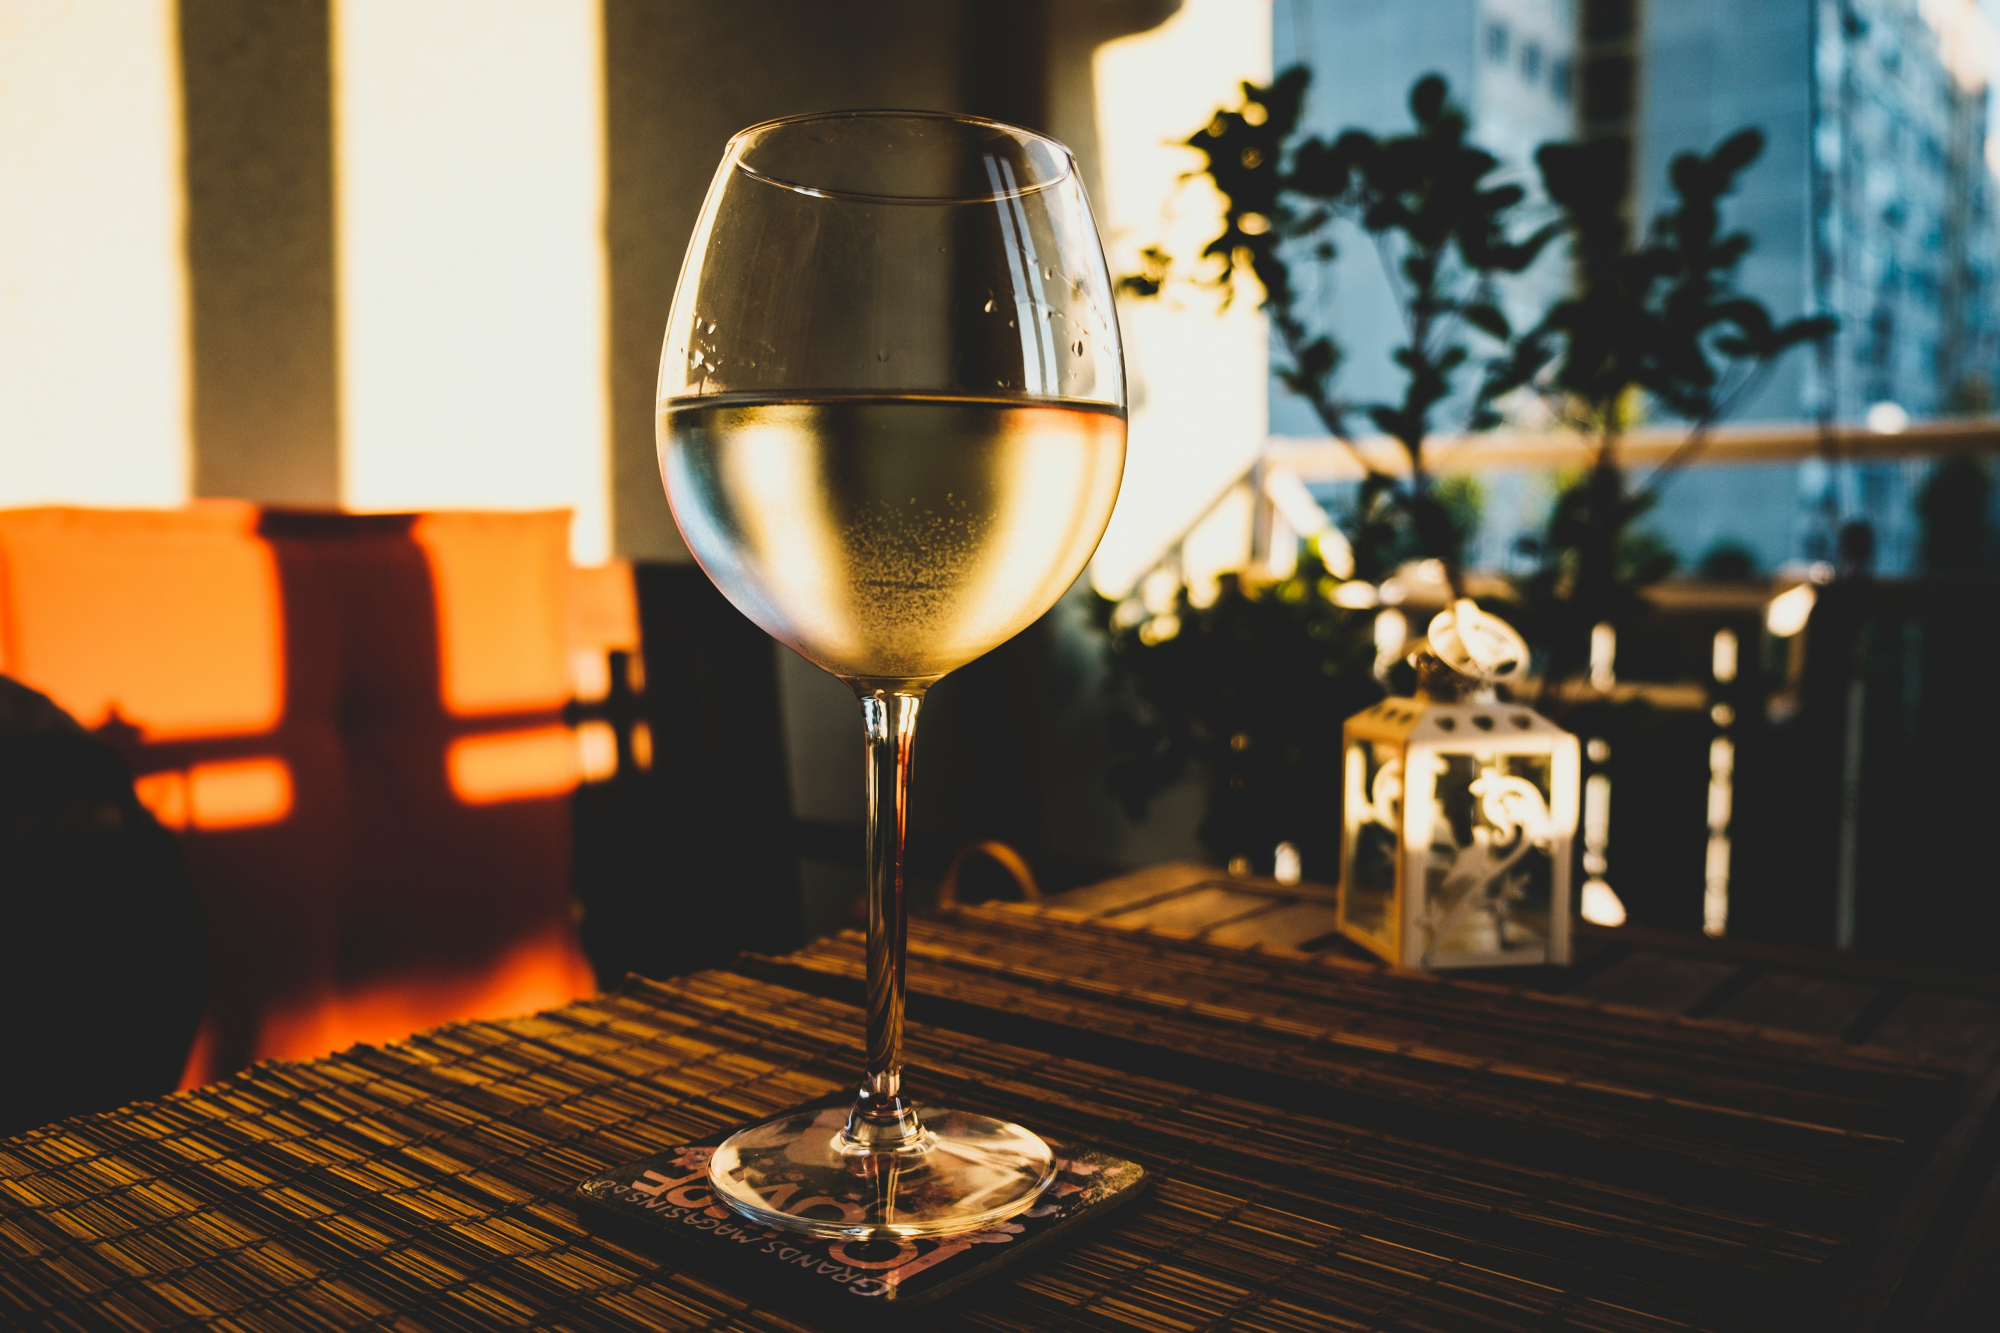 découvrez une sélection de vins blancs de qualité pour tous les palais chez nous. des vins frais, fruités et élégants vous attendent pour sublimer vos repas et vos moments de convivialité.